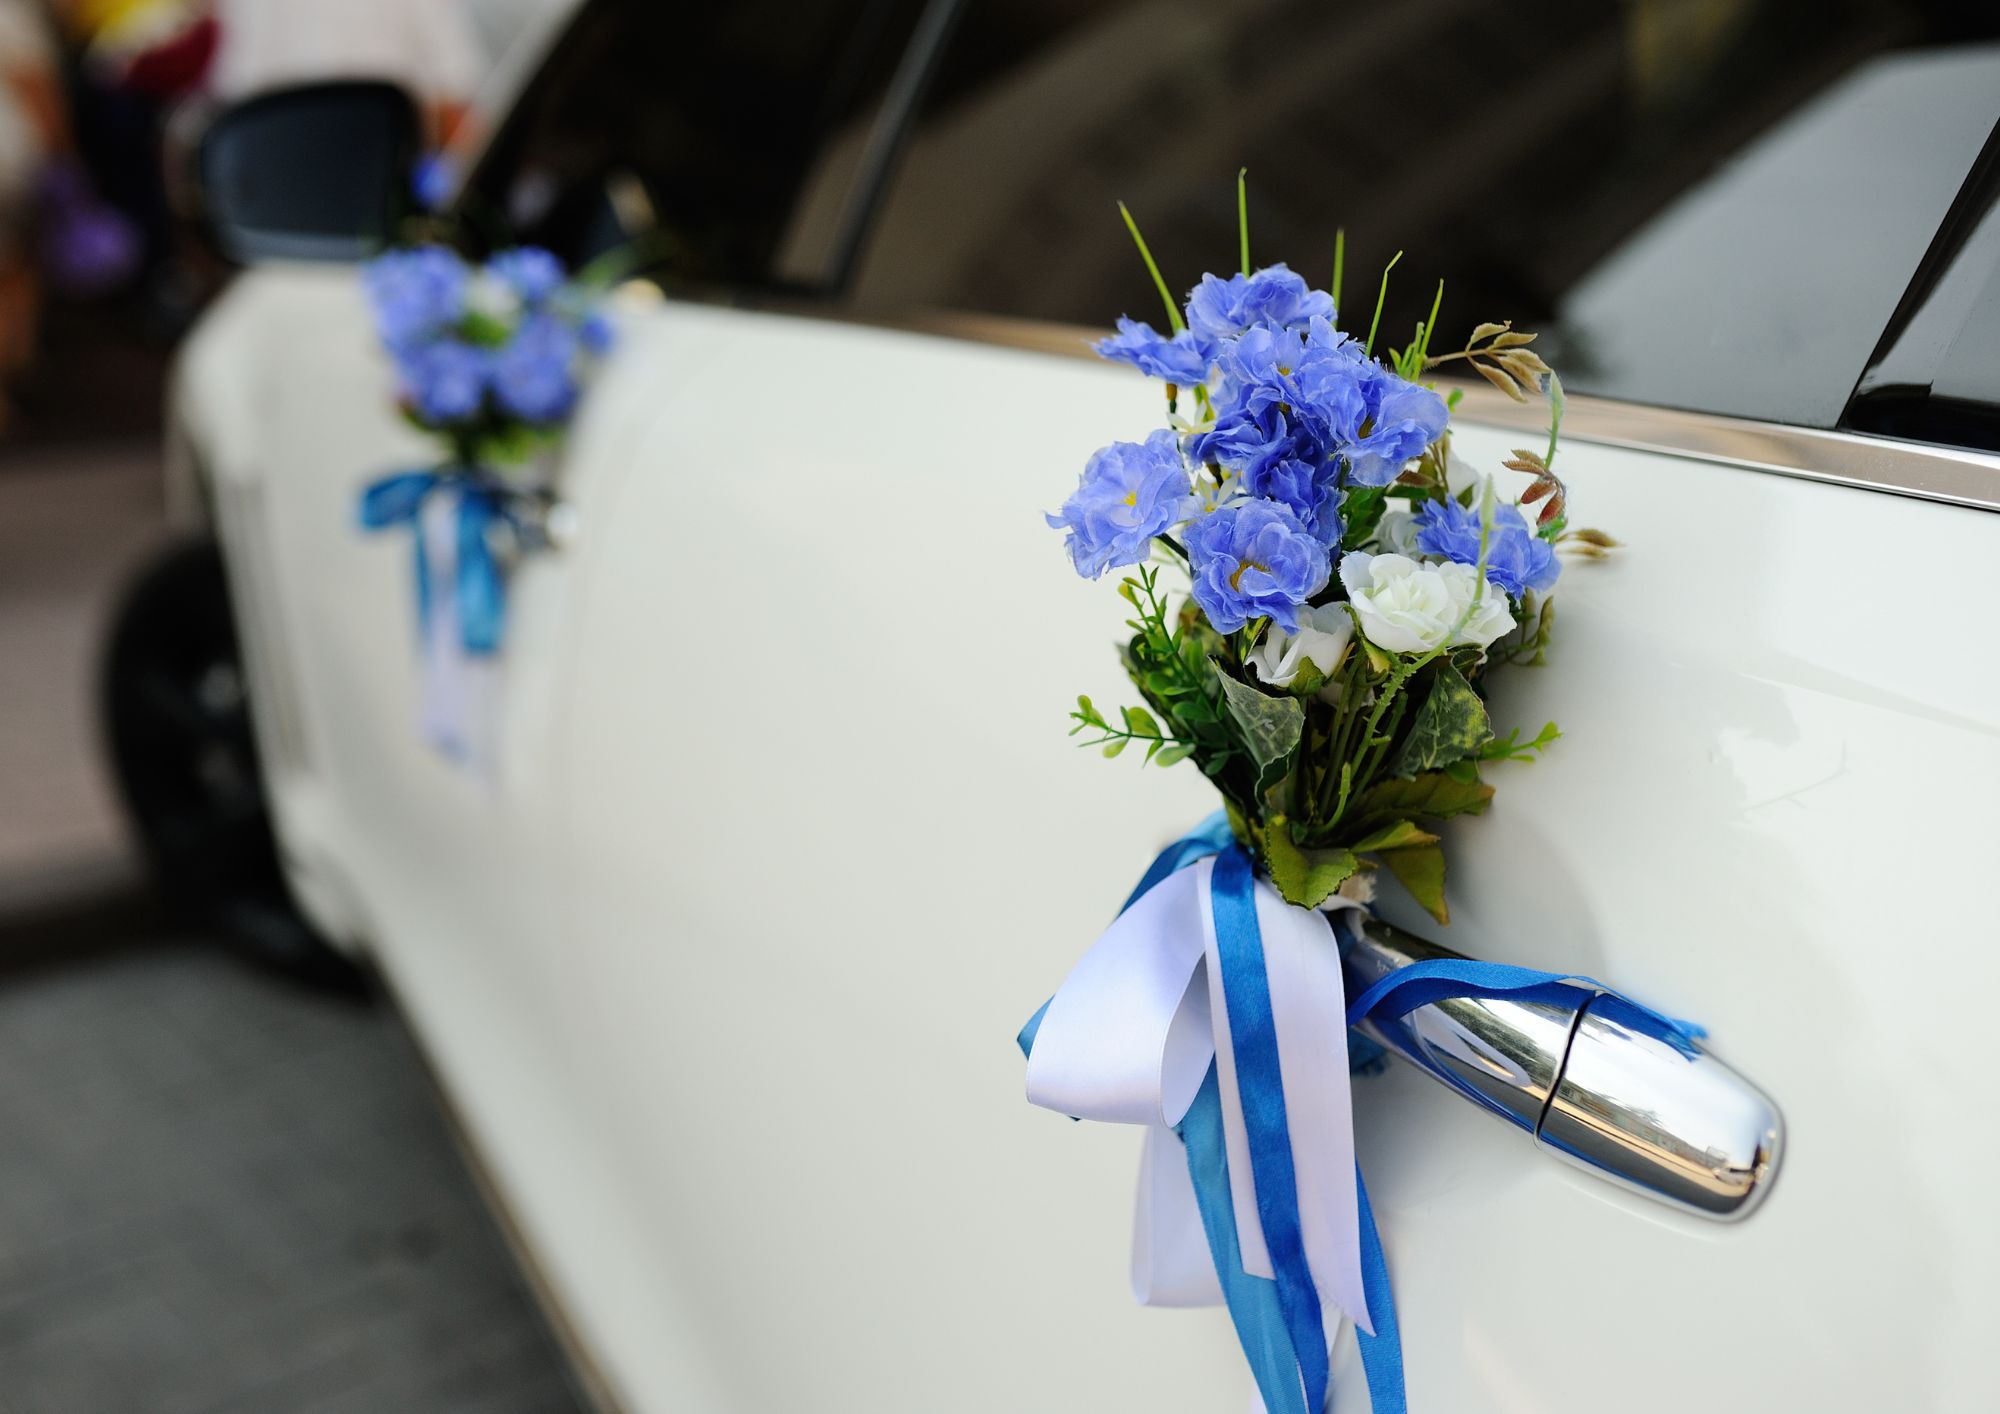 מפתיעים: 4 סוגים של כלי רכב מיוחדים לחתן והכלה